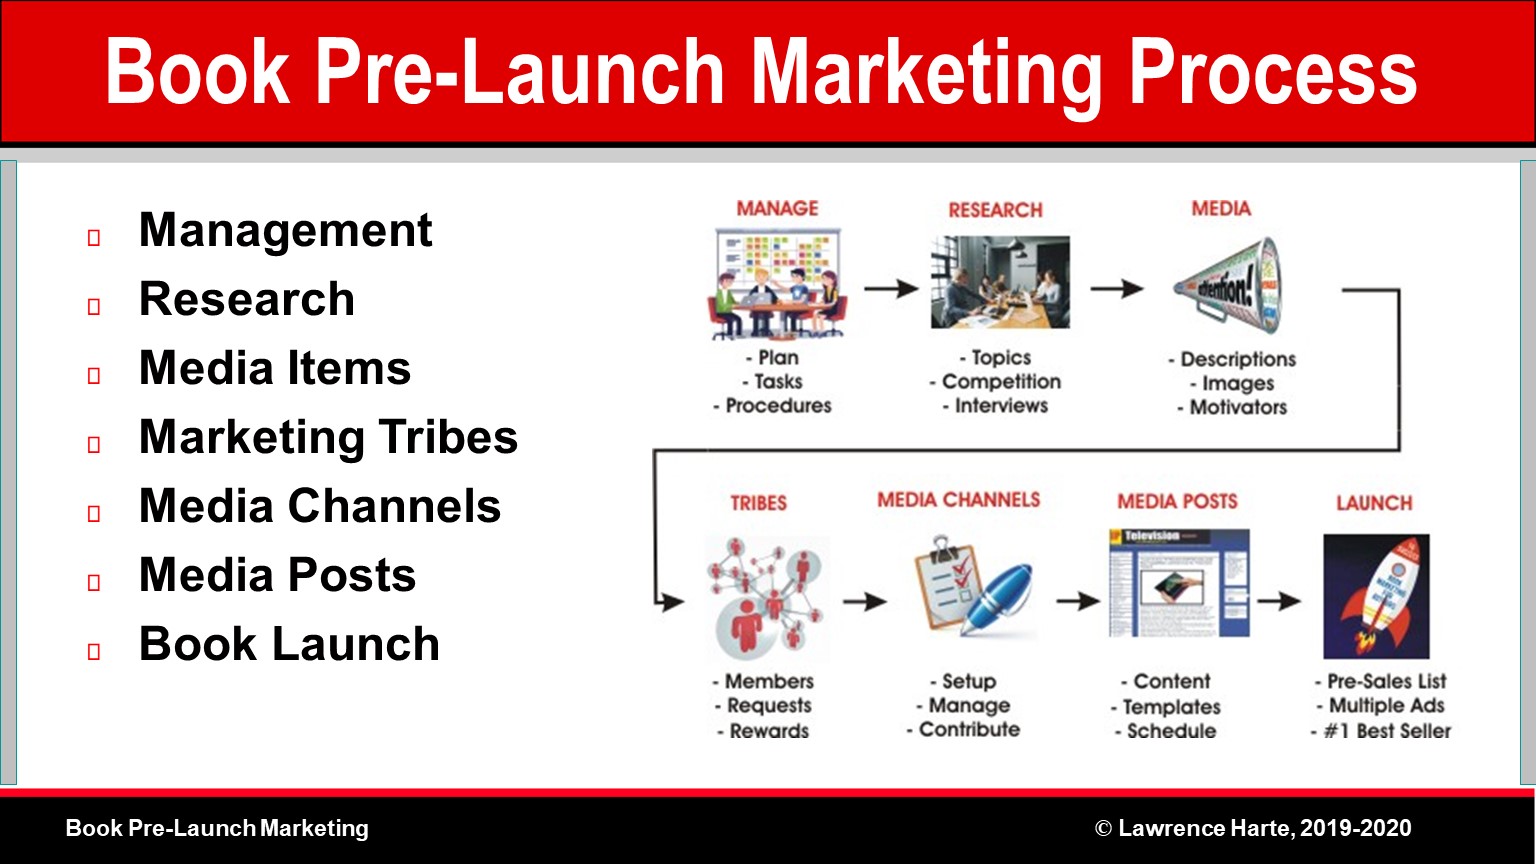 Book Pre-Launch Marketing Process Diagram